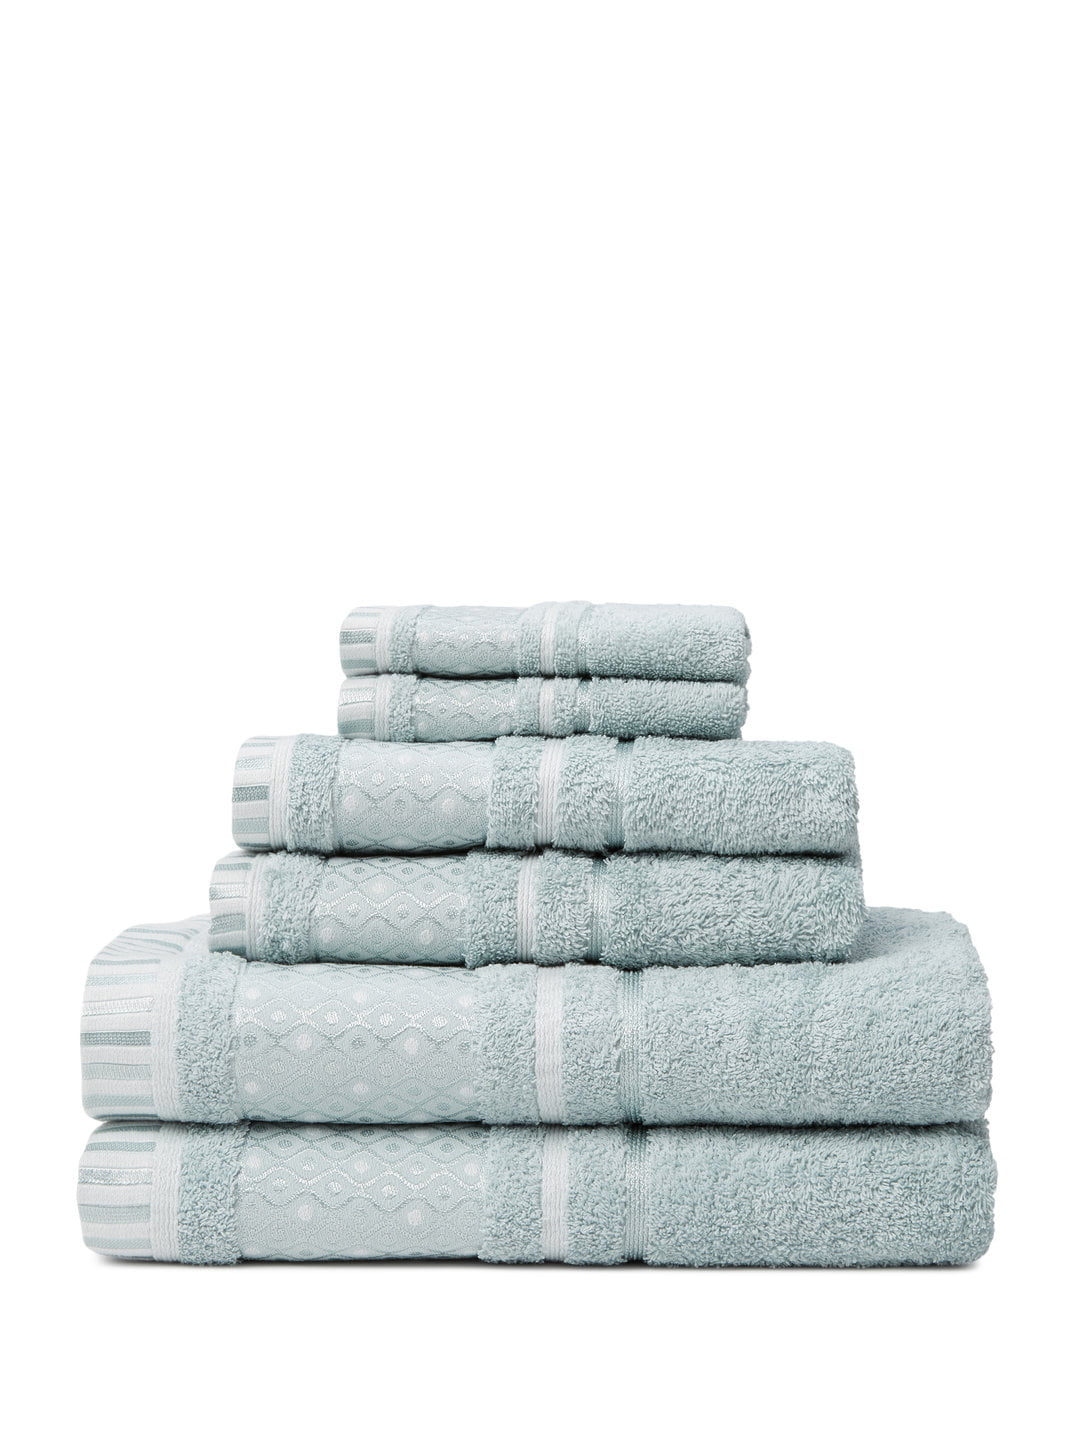 Balio 6-Piece 100% Turkish Cotton Bath Towel Set in Surf - Walmart.com